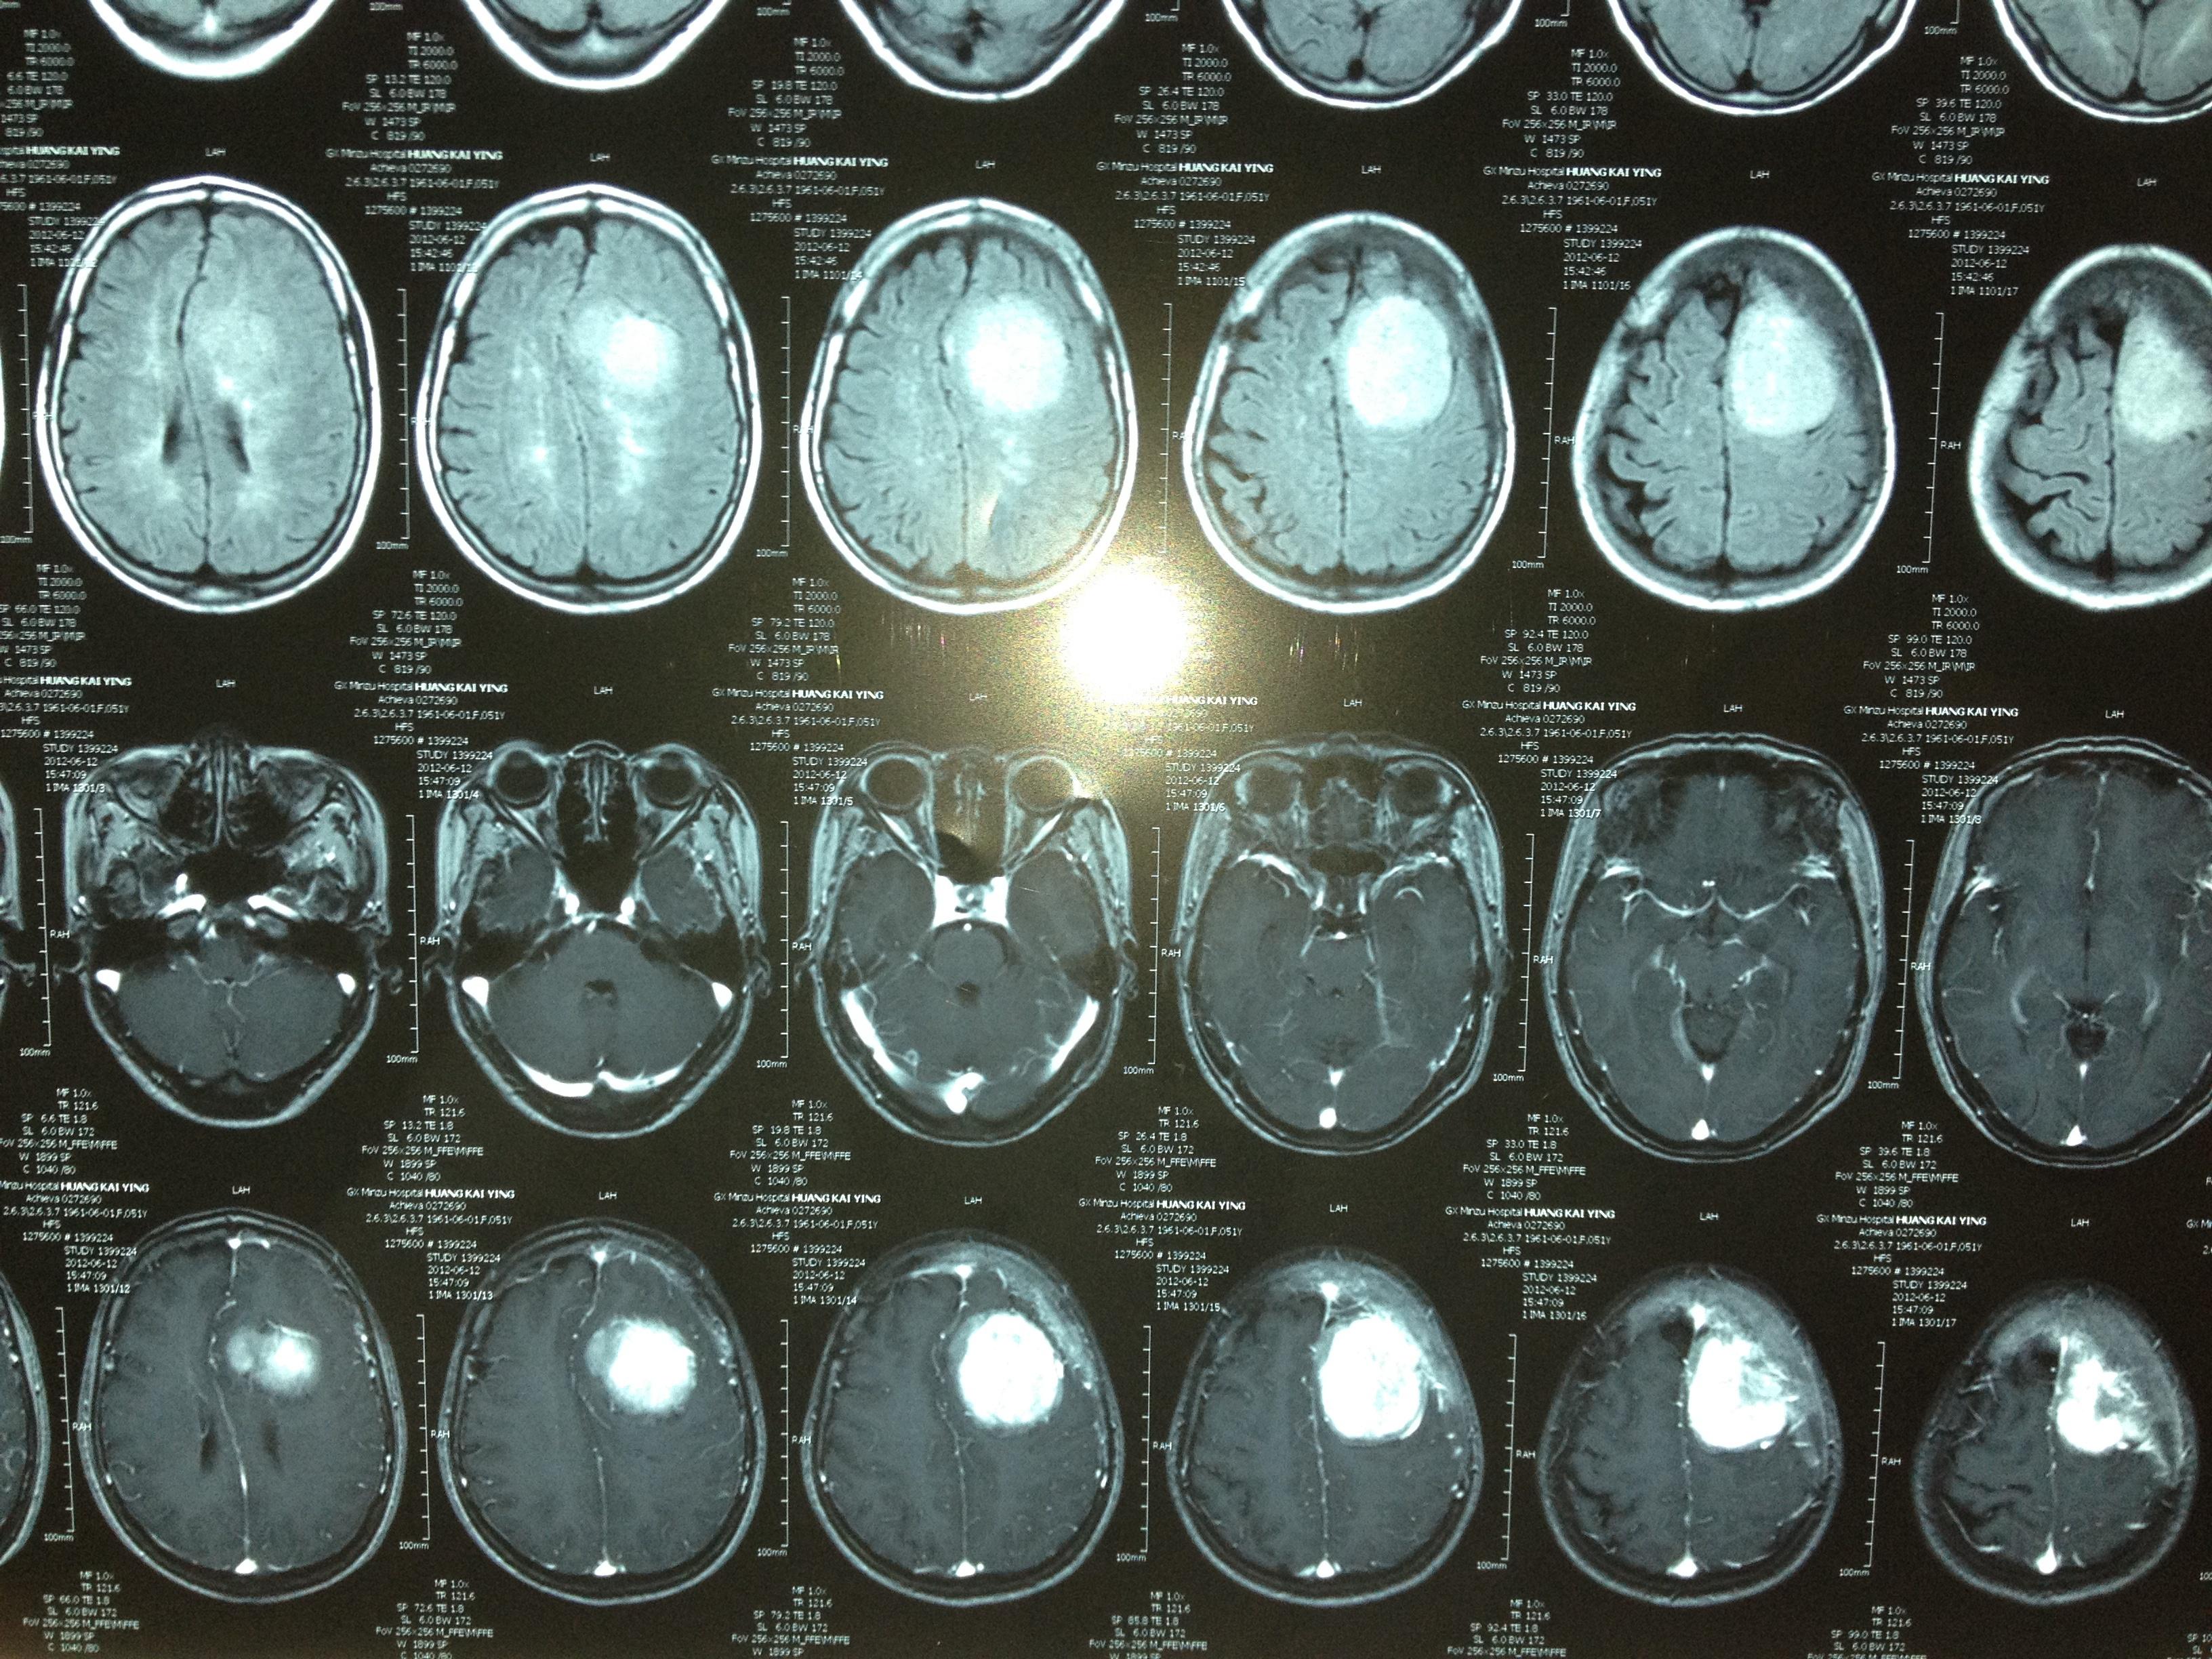 脑膜瘤MRI图片